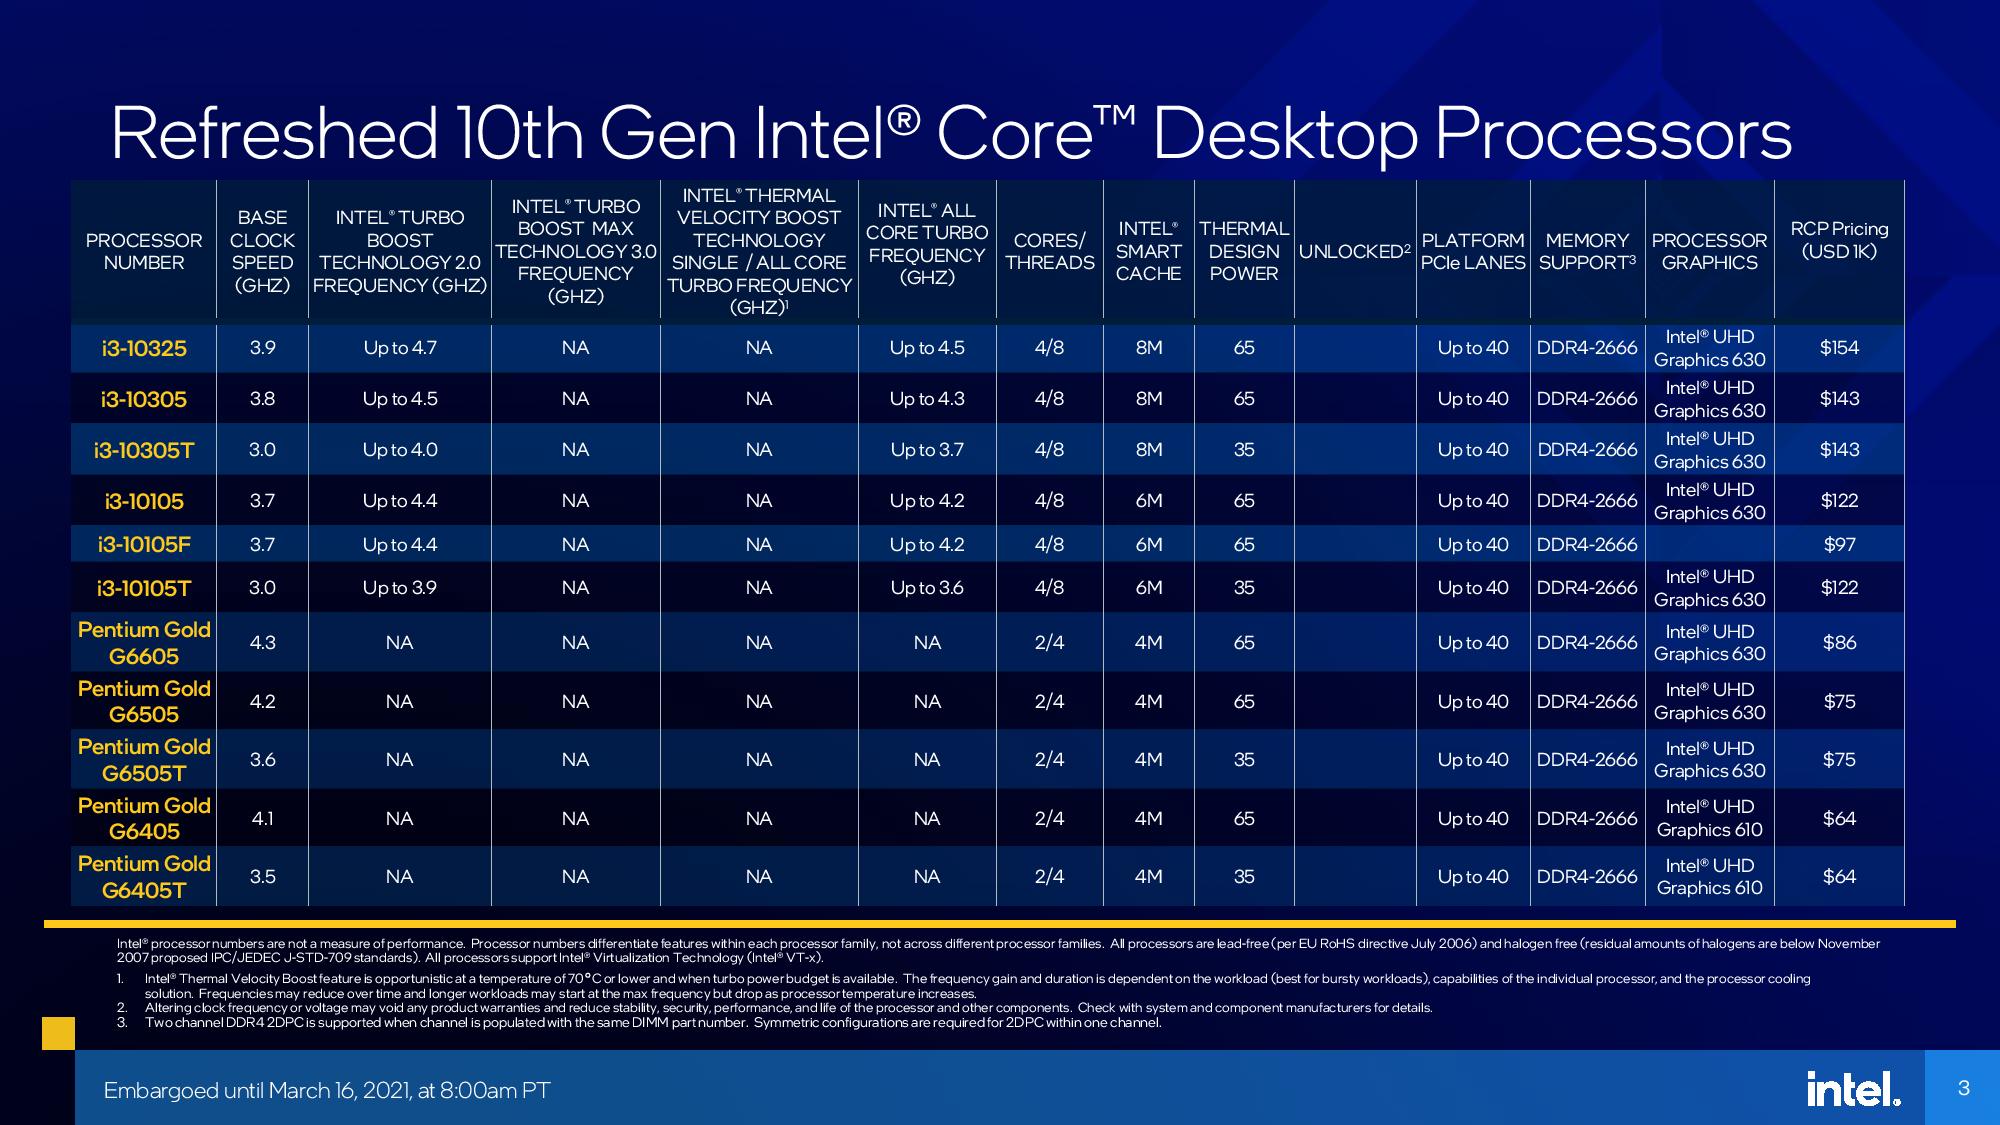 رسمياً..Intel تعلن عن معالجات الجيل الحادي عشر Rocket Lake-S